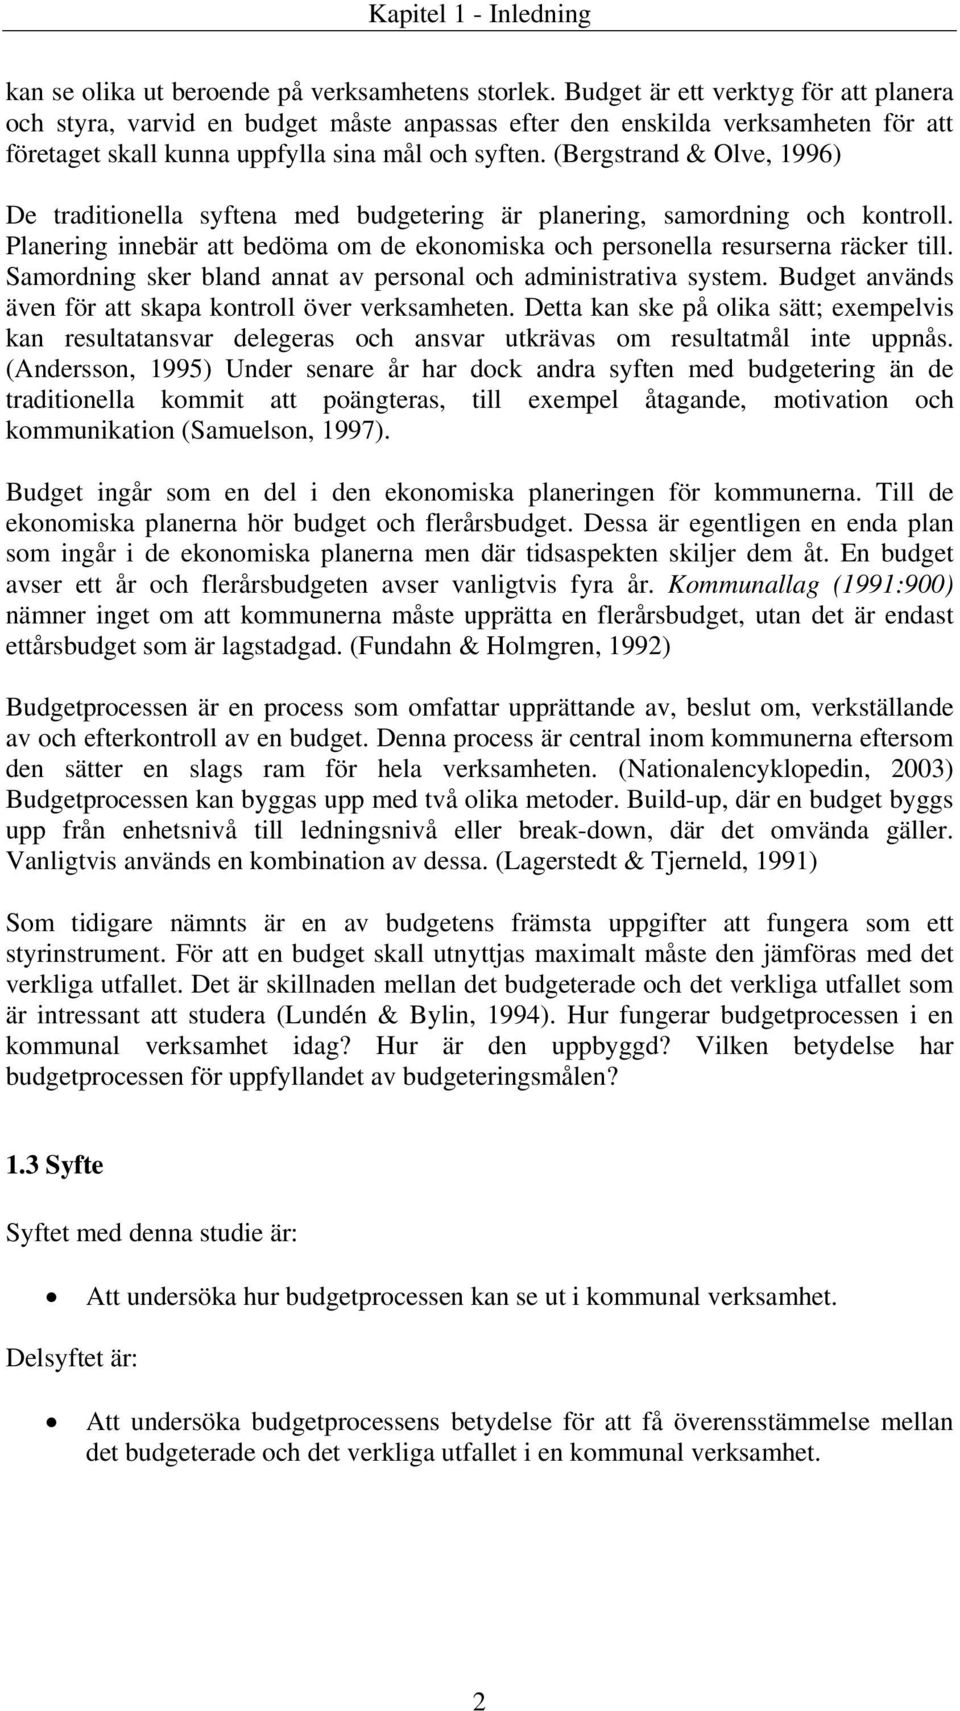 (Bergstrand & Olve, 1996) De traditionella syftena med budgetering är planering, samordning och kontroll. Planering innebär att bedöma om de ekonomiska och personella resurserna räcker till.